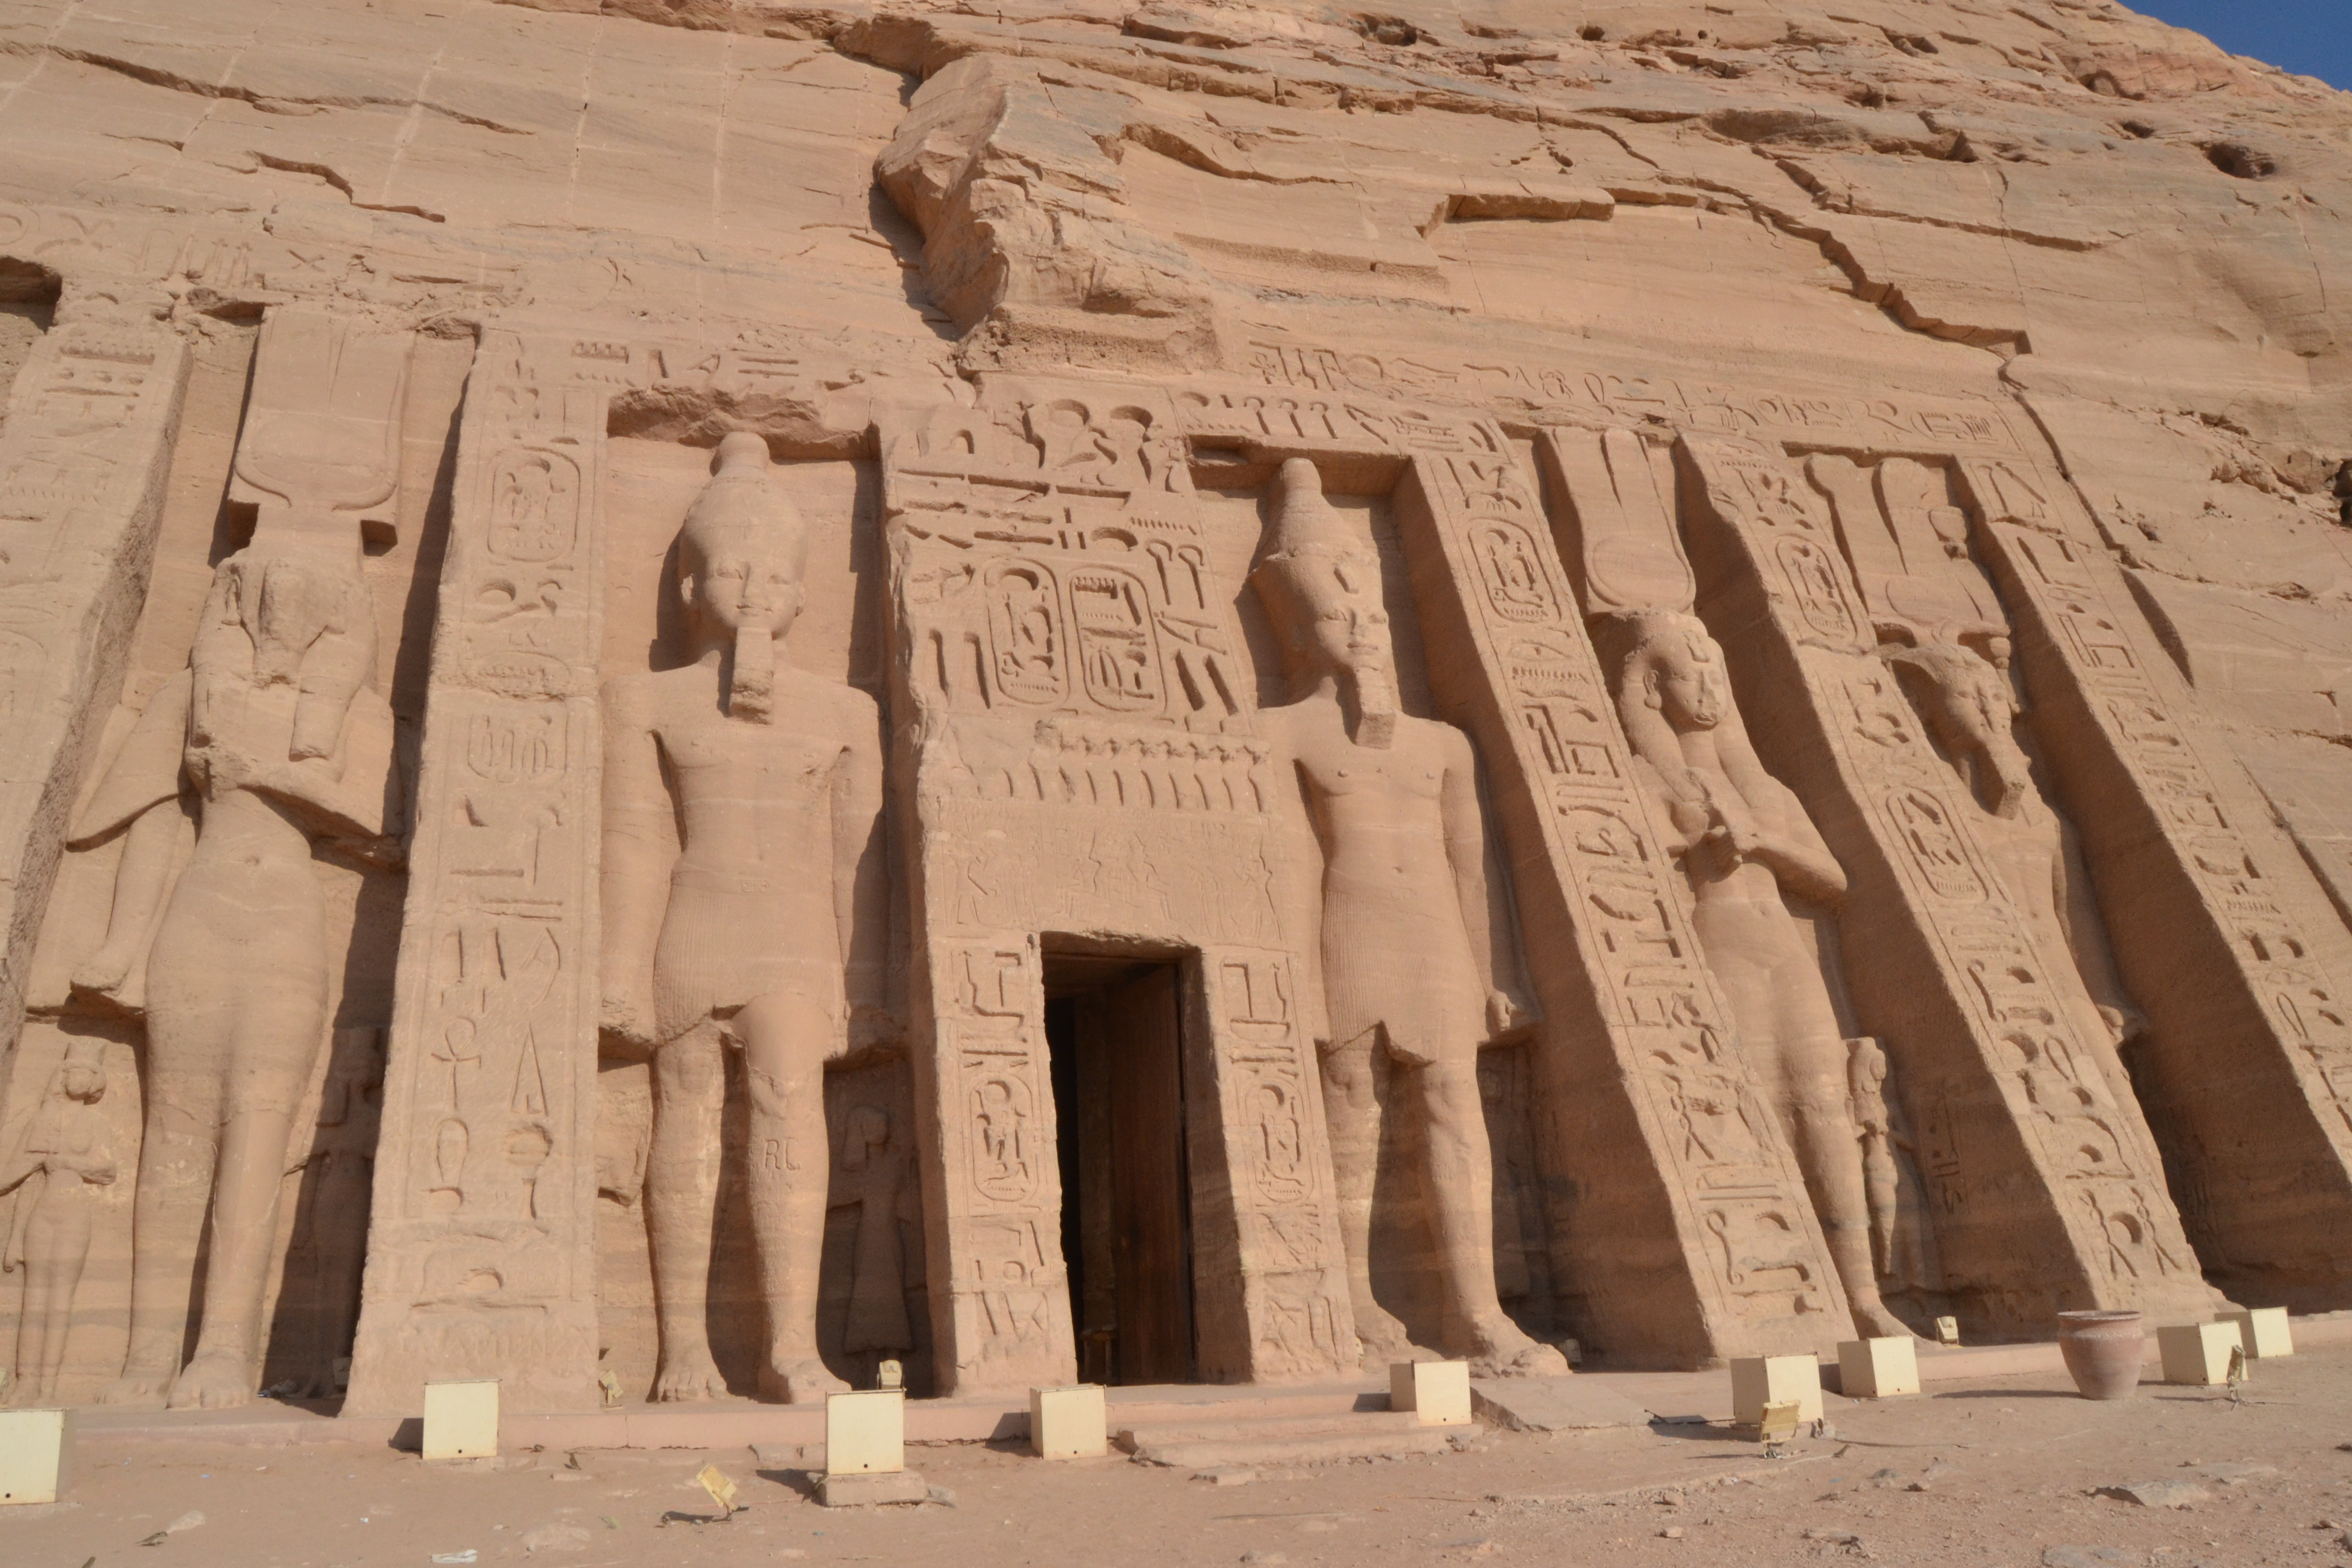 Nefertari's temple at Abu Simbel